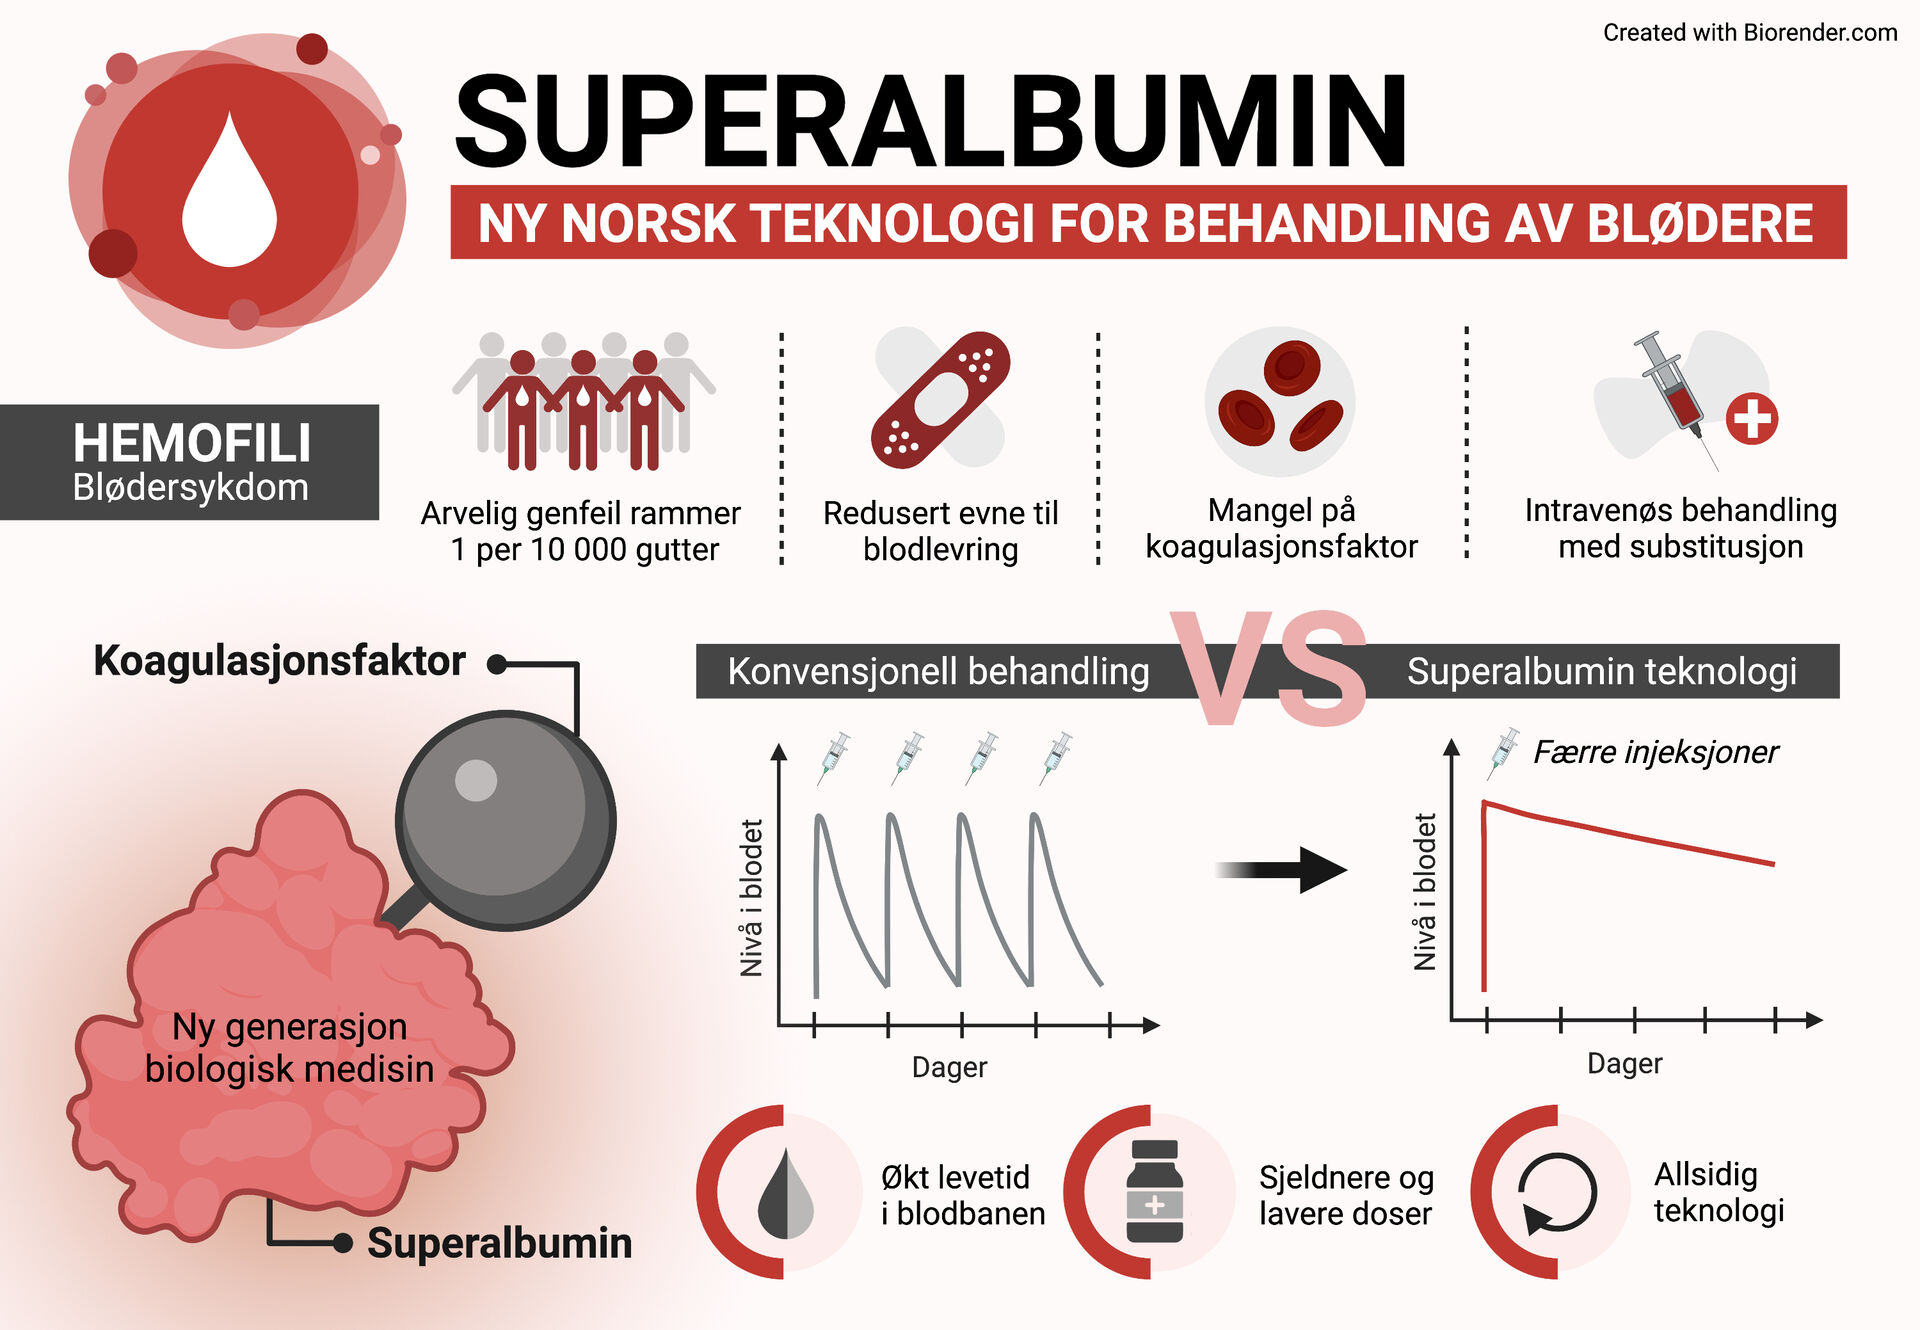 Figur som illustrerer hvordan super albumin teknologien virker